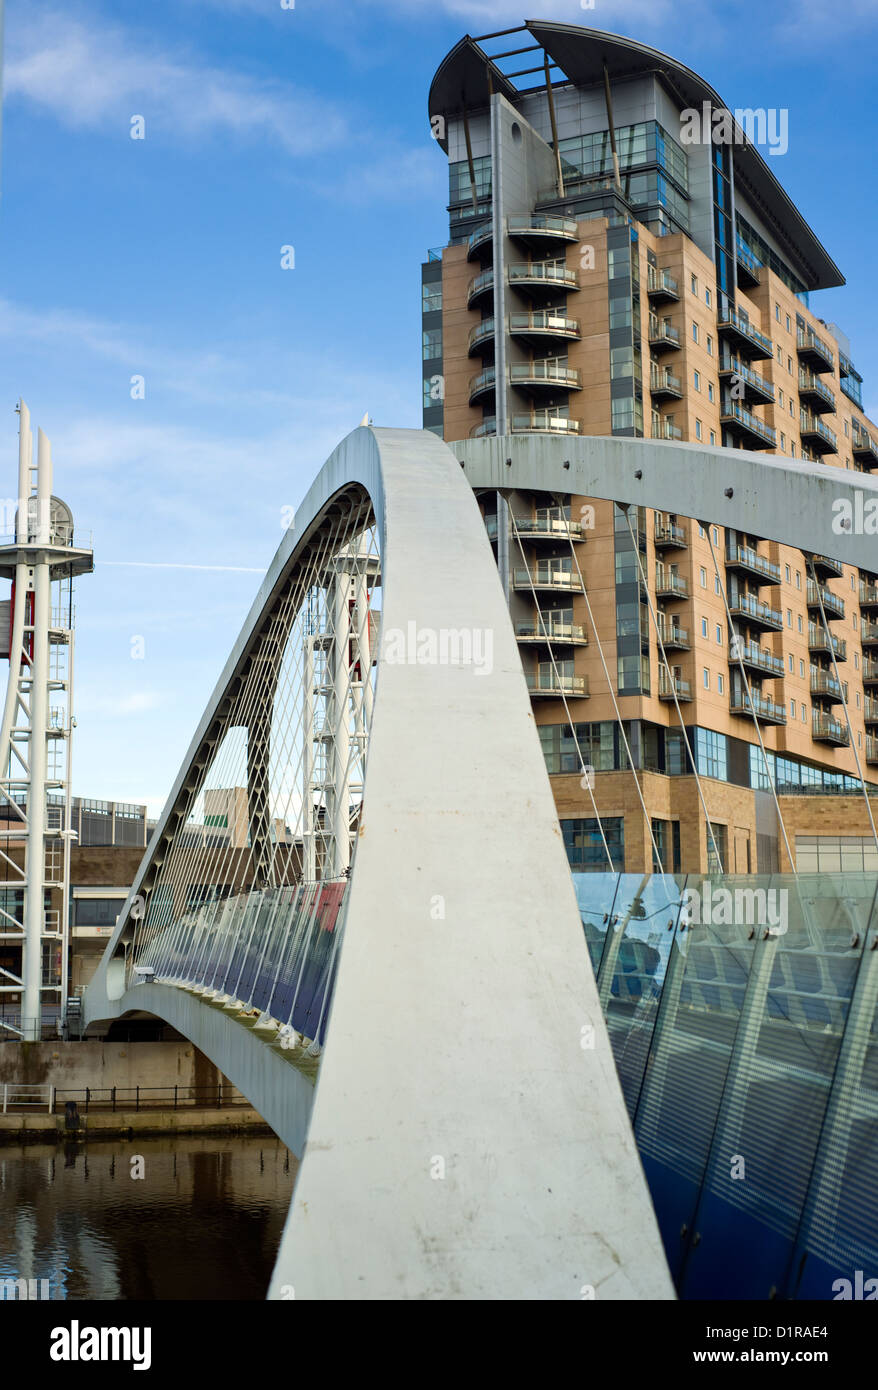 L'ascenseur, pont ou passerelle du millénaire, au cours de la Manchester Ship Canal à Salford Quays, Manchester, Angleterre, RU Banque D'Images